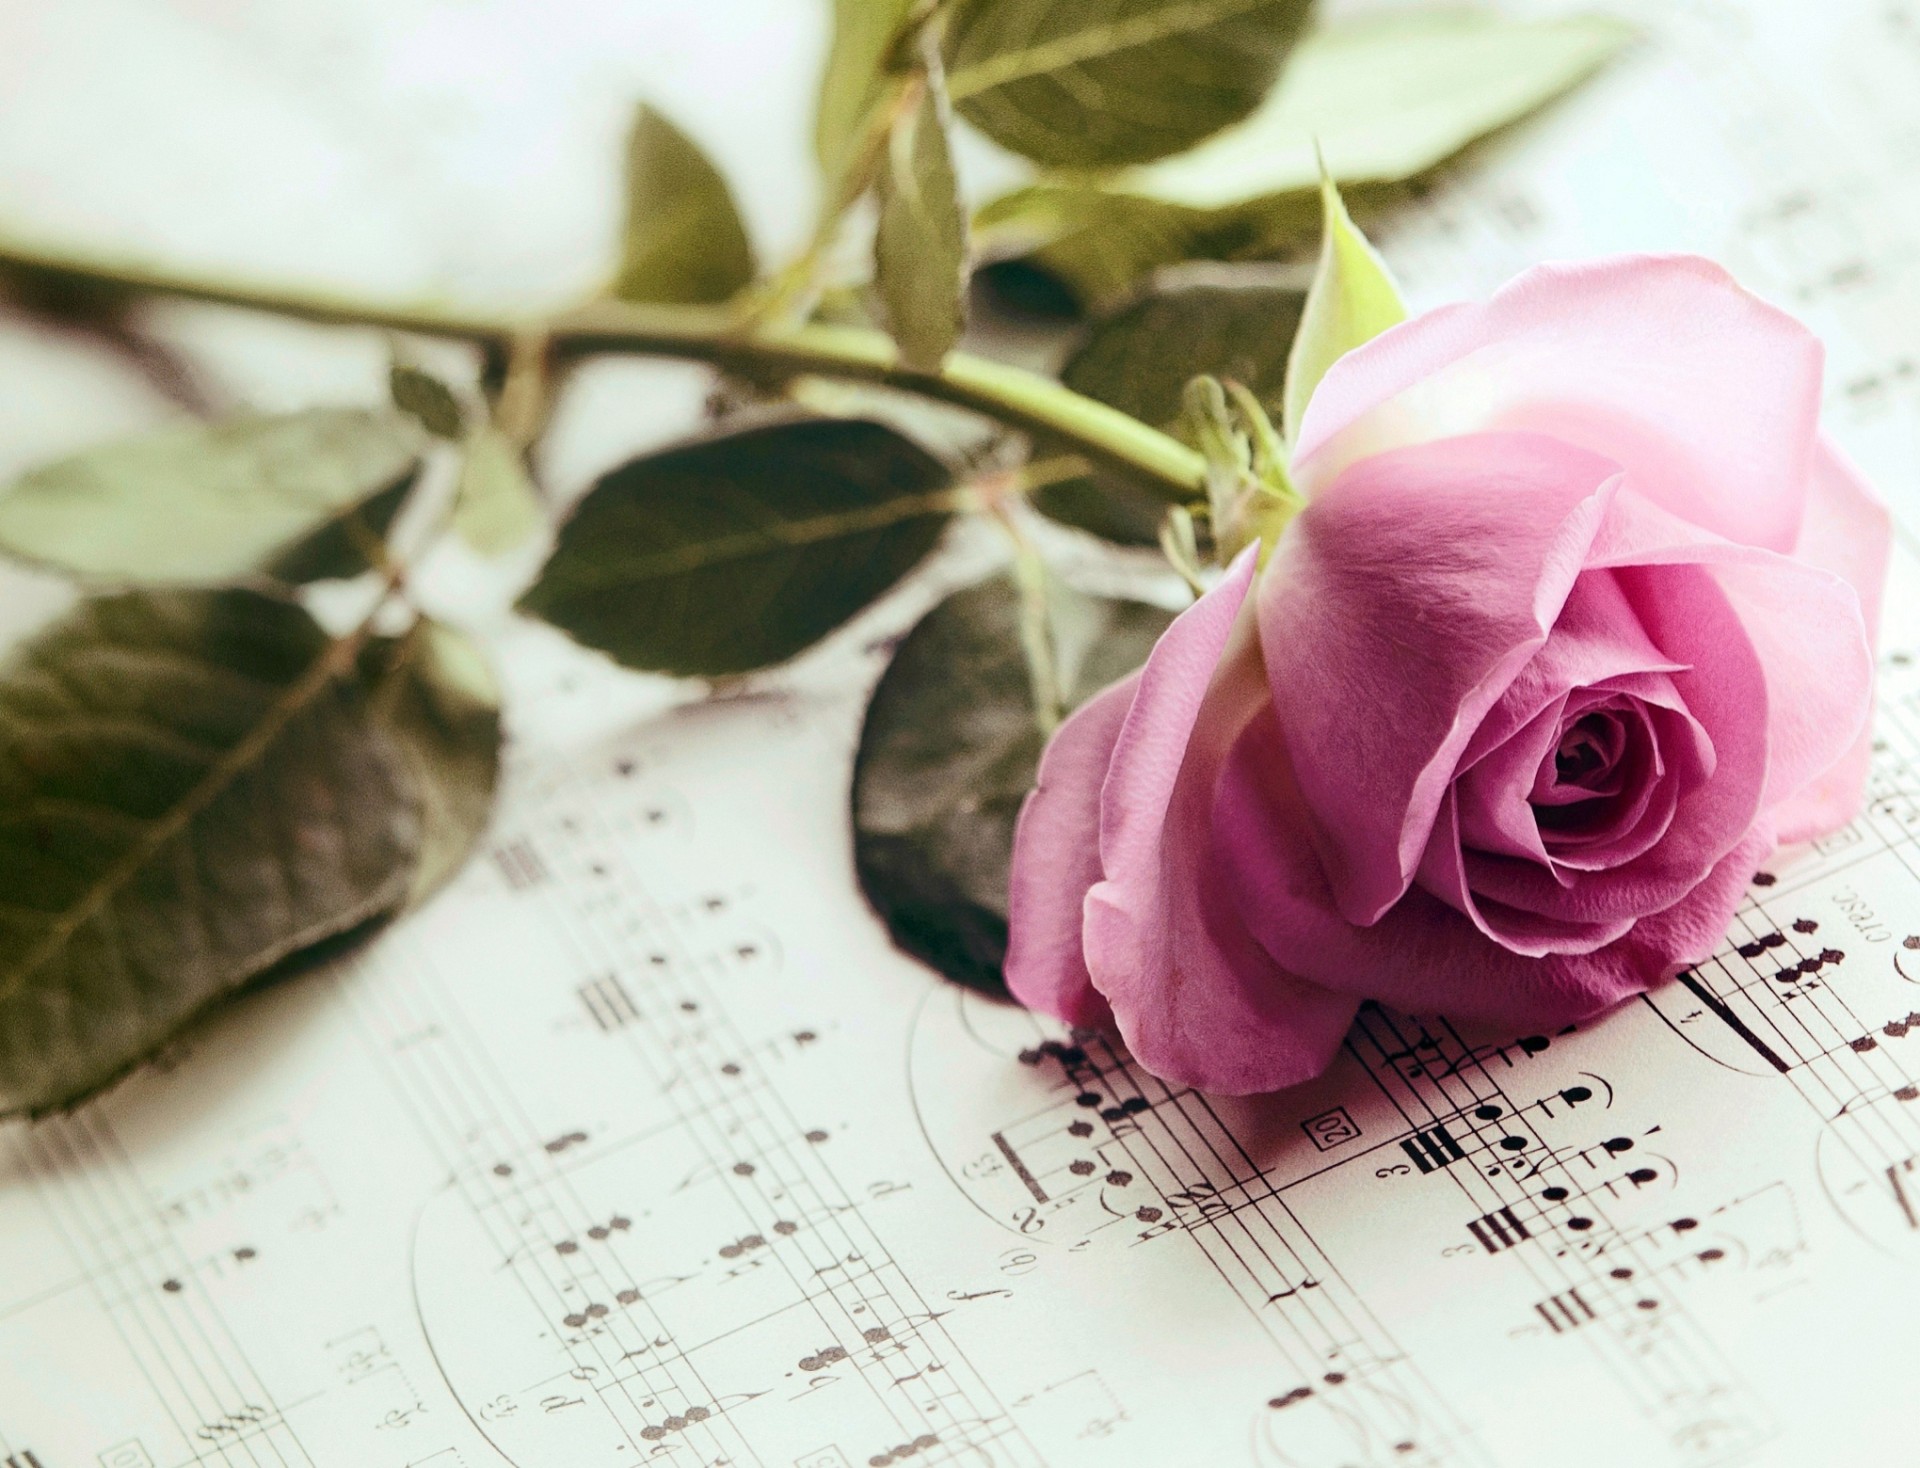 Музыка цветов мп3. Ноты и цветы. Розы фон. Красивый фон с нотами и цветами.